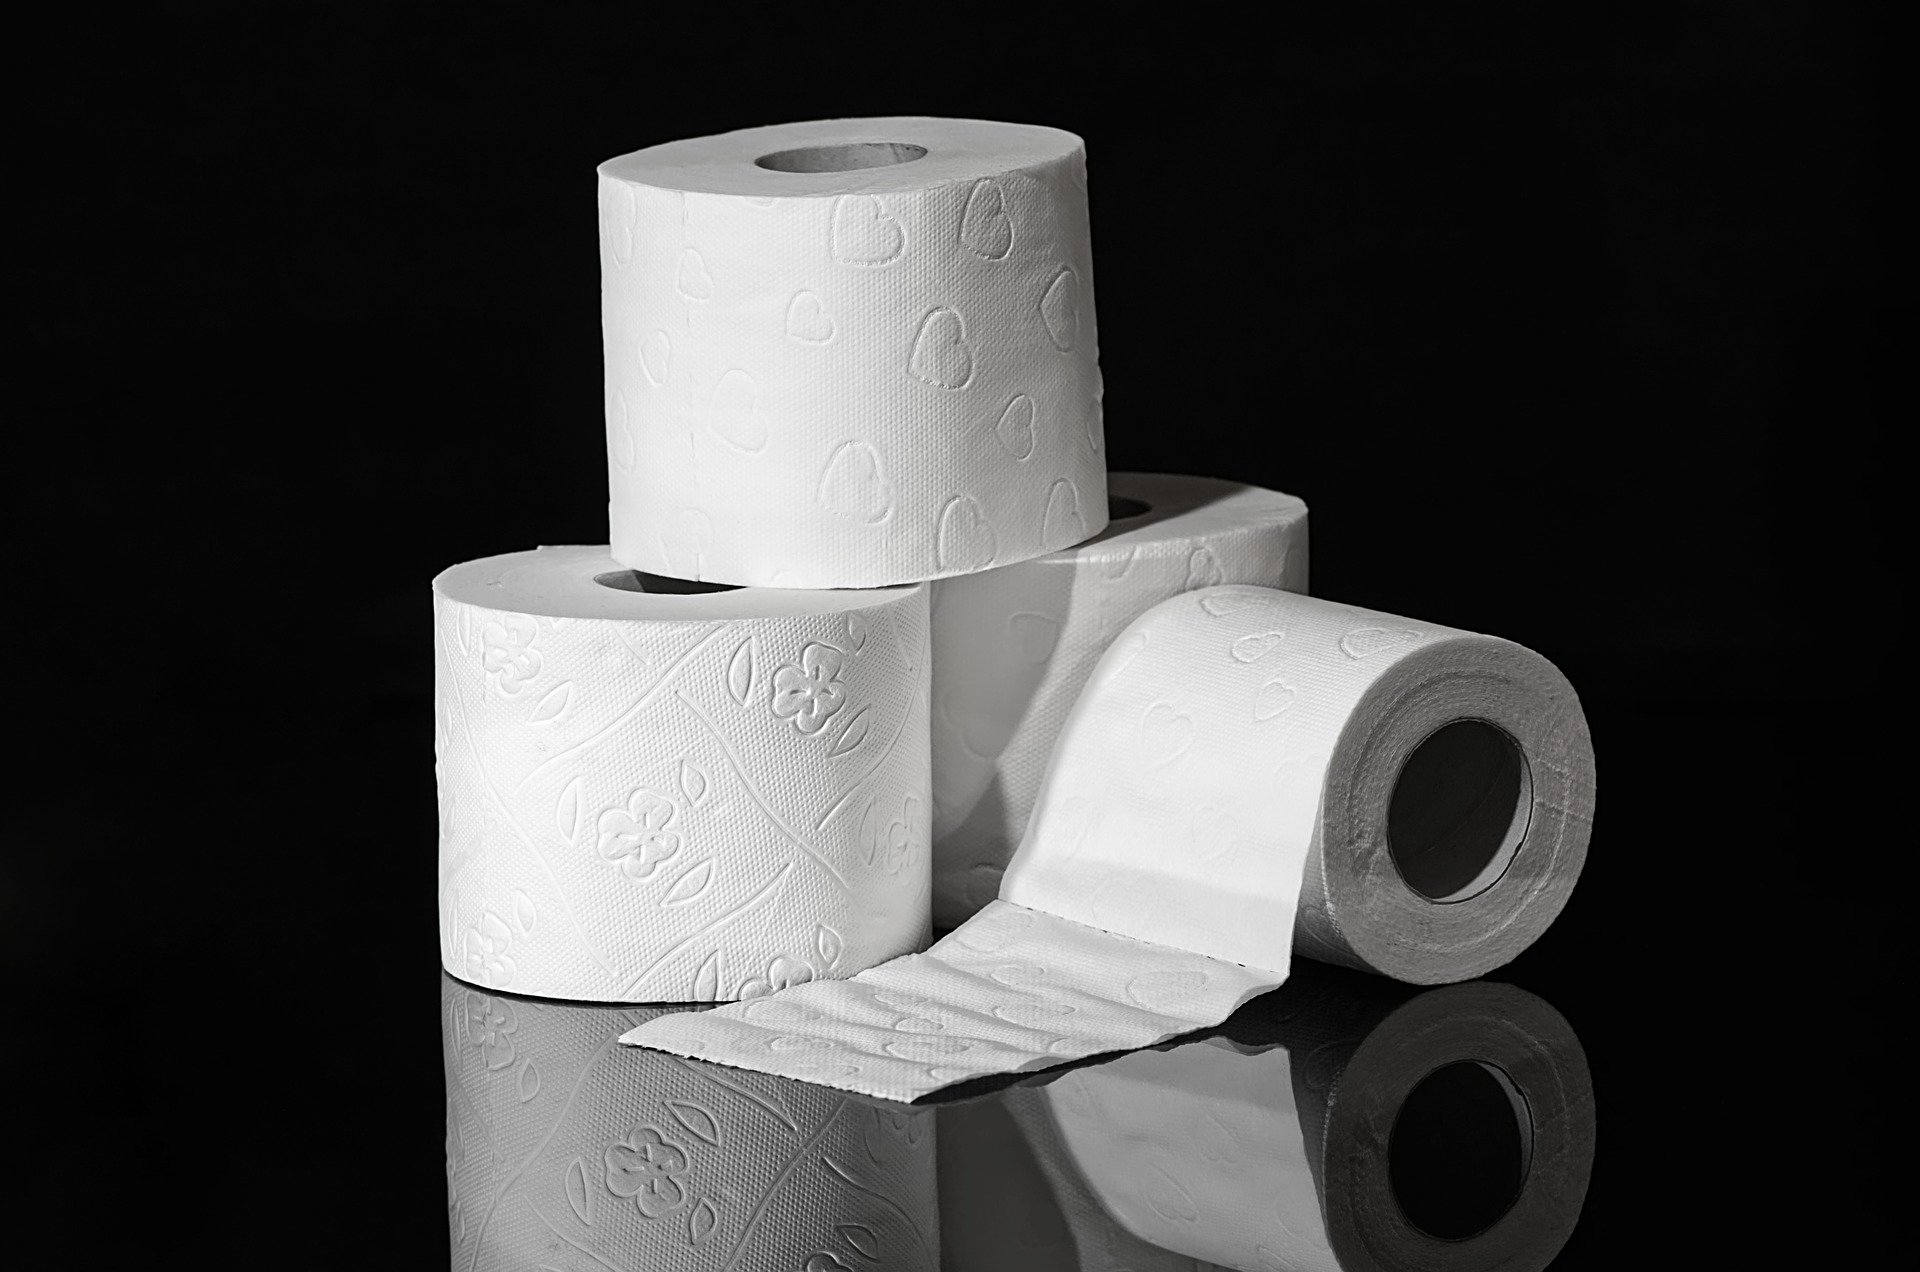 Proč mít roli toaletního papíru v lednici? Prozradíme vám to!